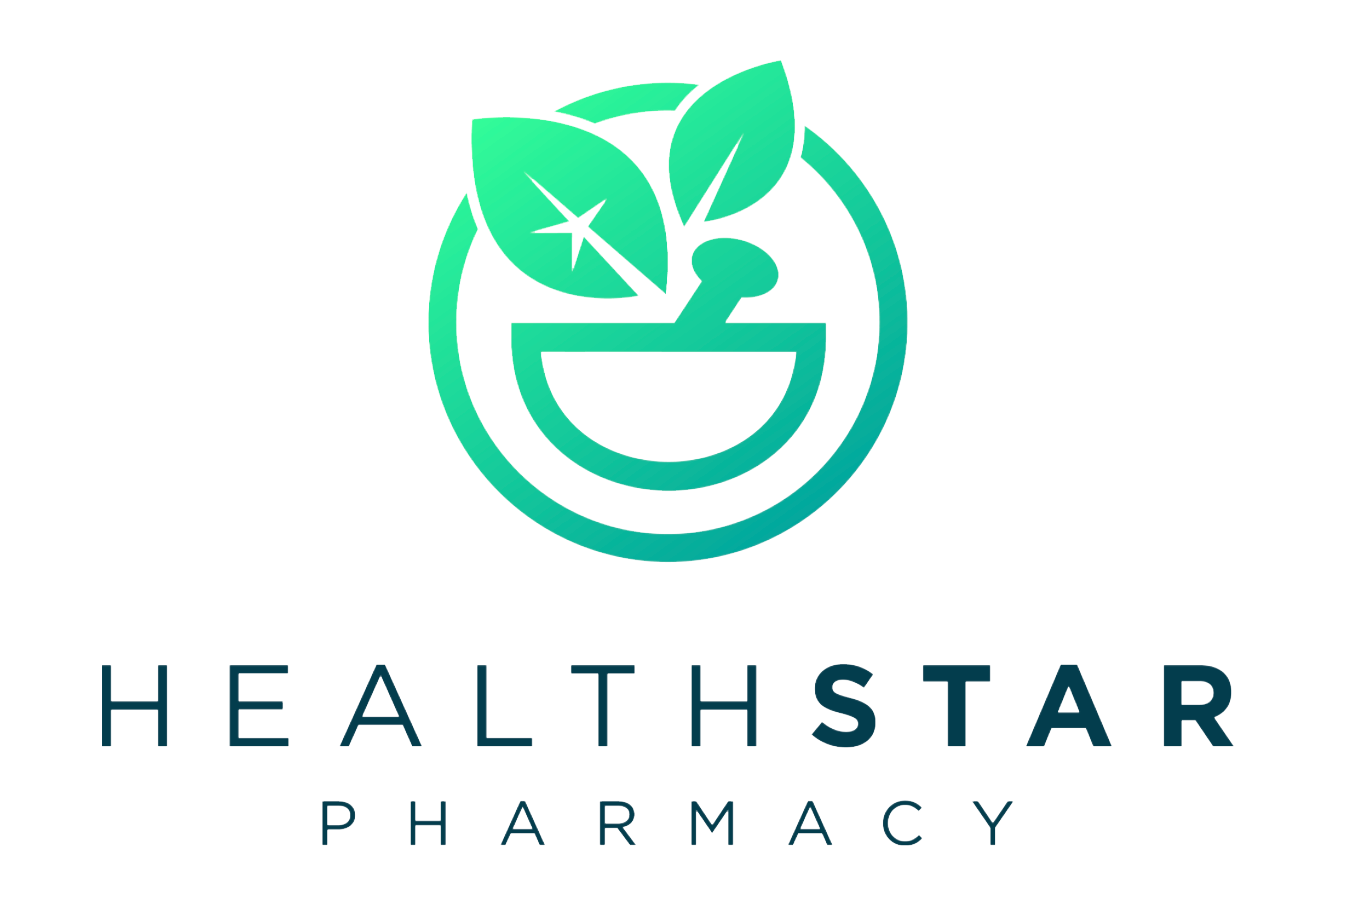 Health Star Pharmacy